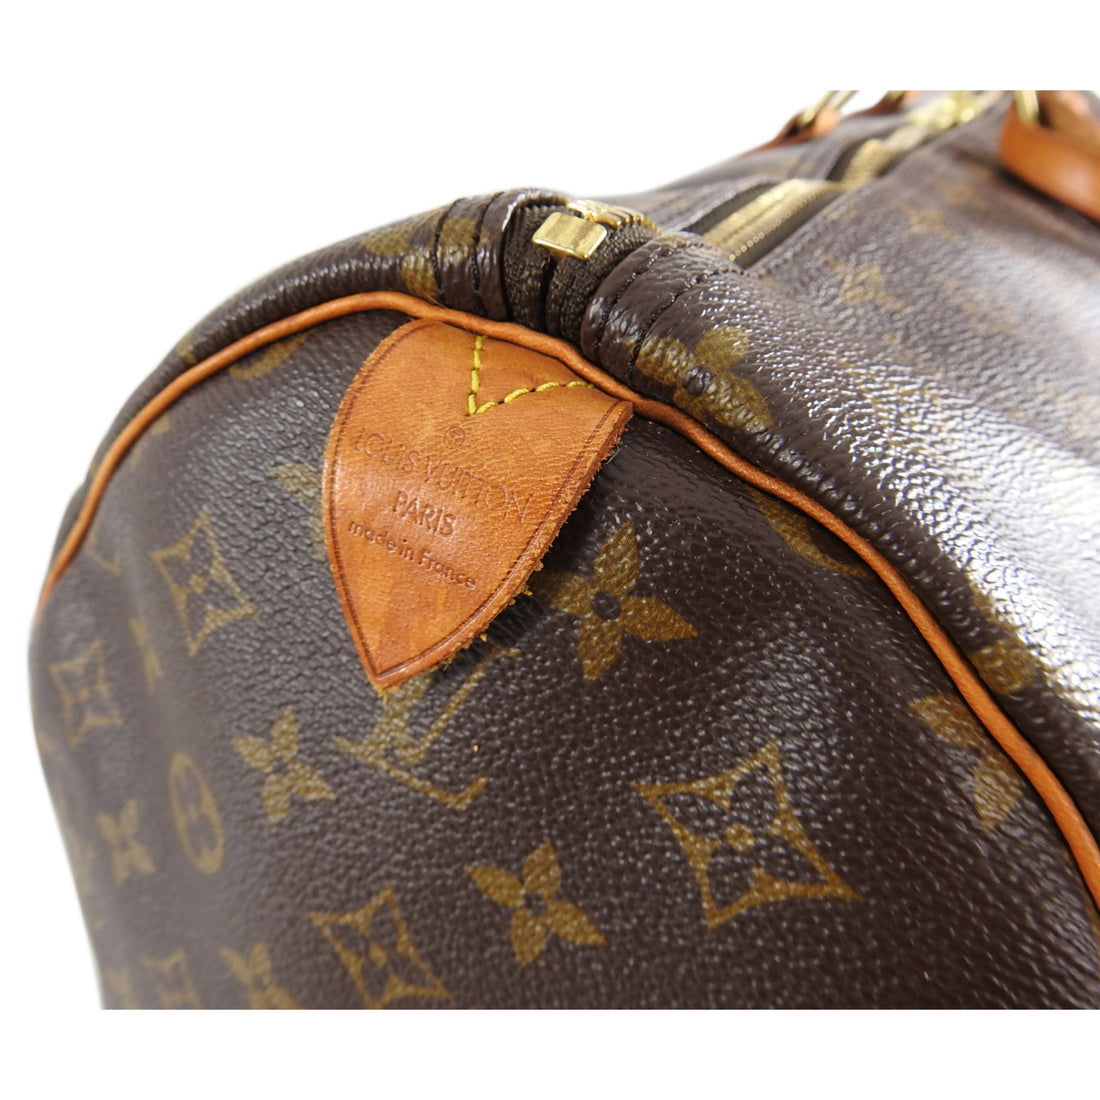 Vintage Louis Vuitton Keepall 60 Monogram Duffel Bag 4MQ9D8R